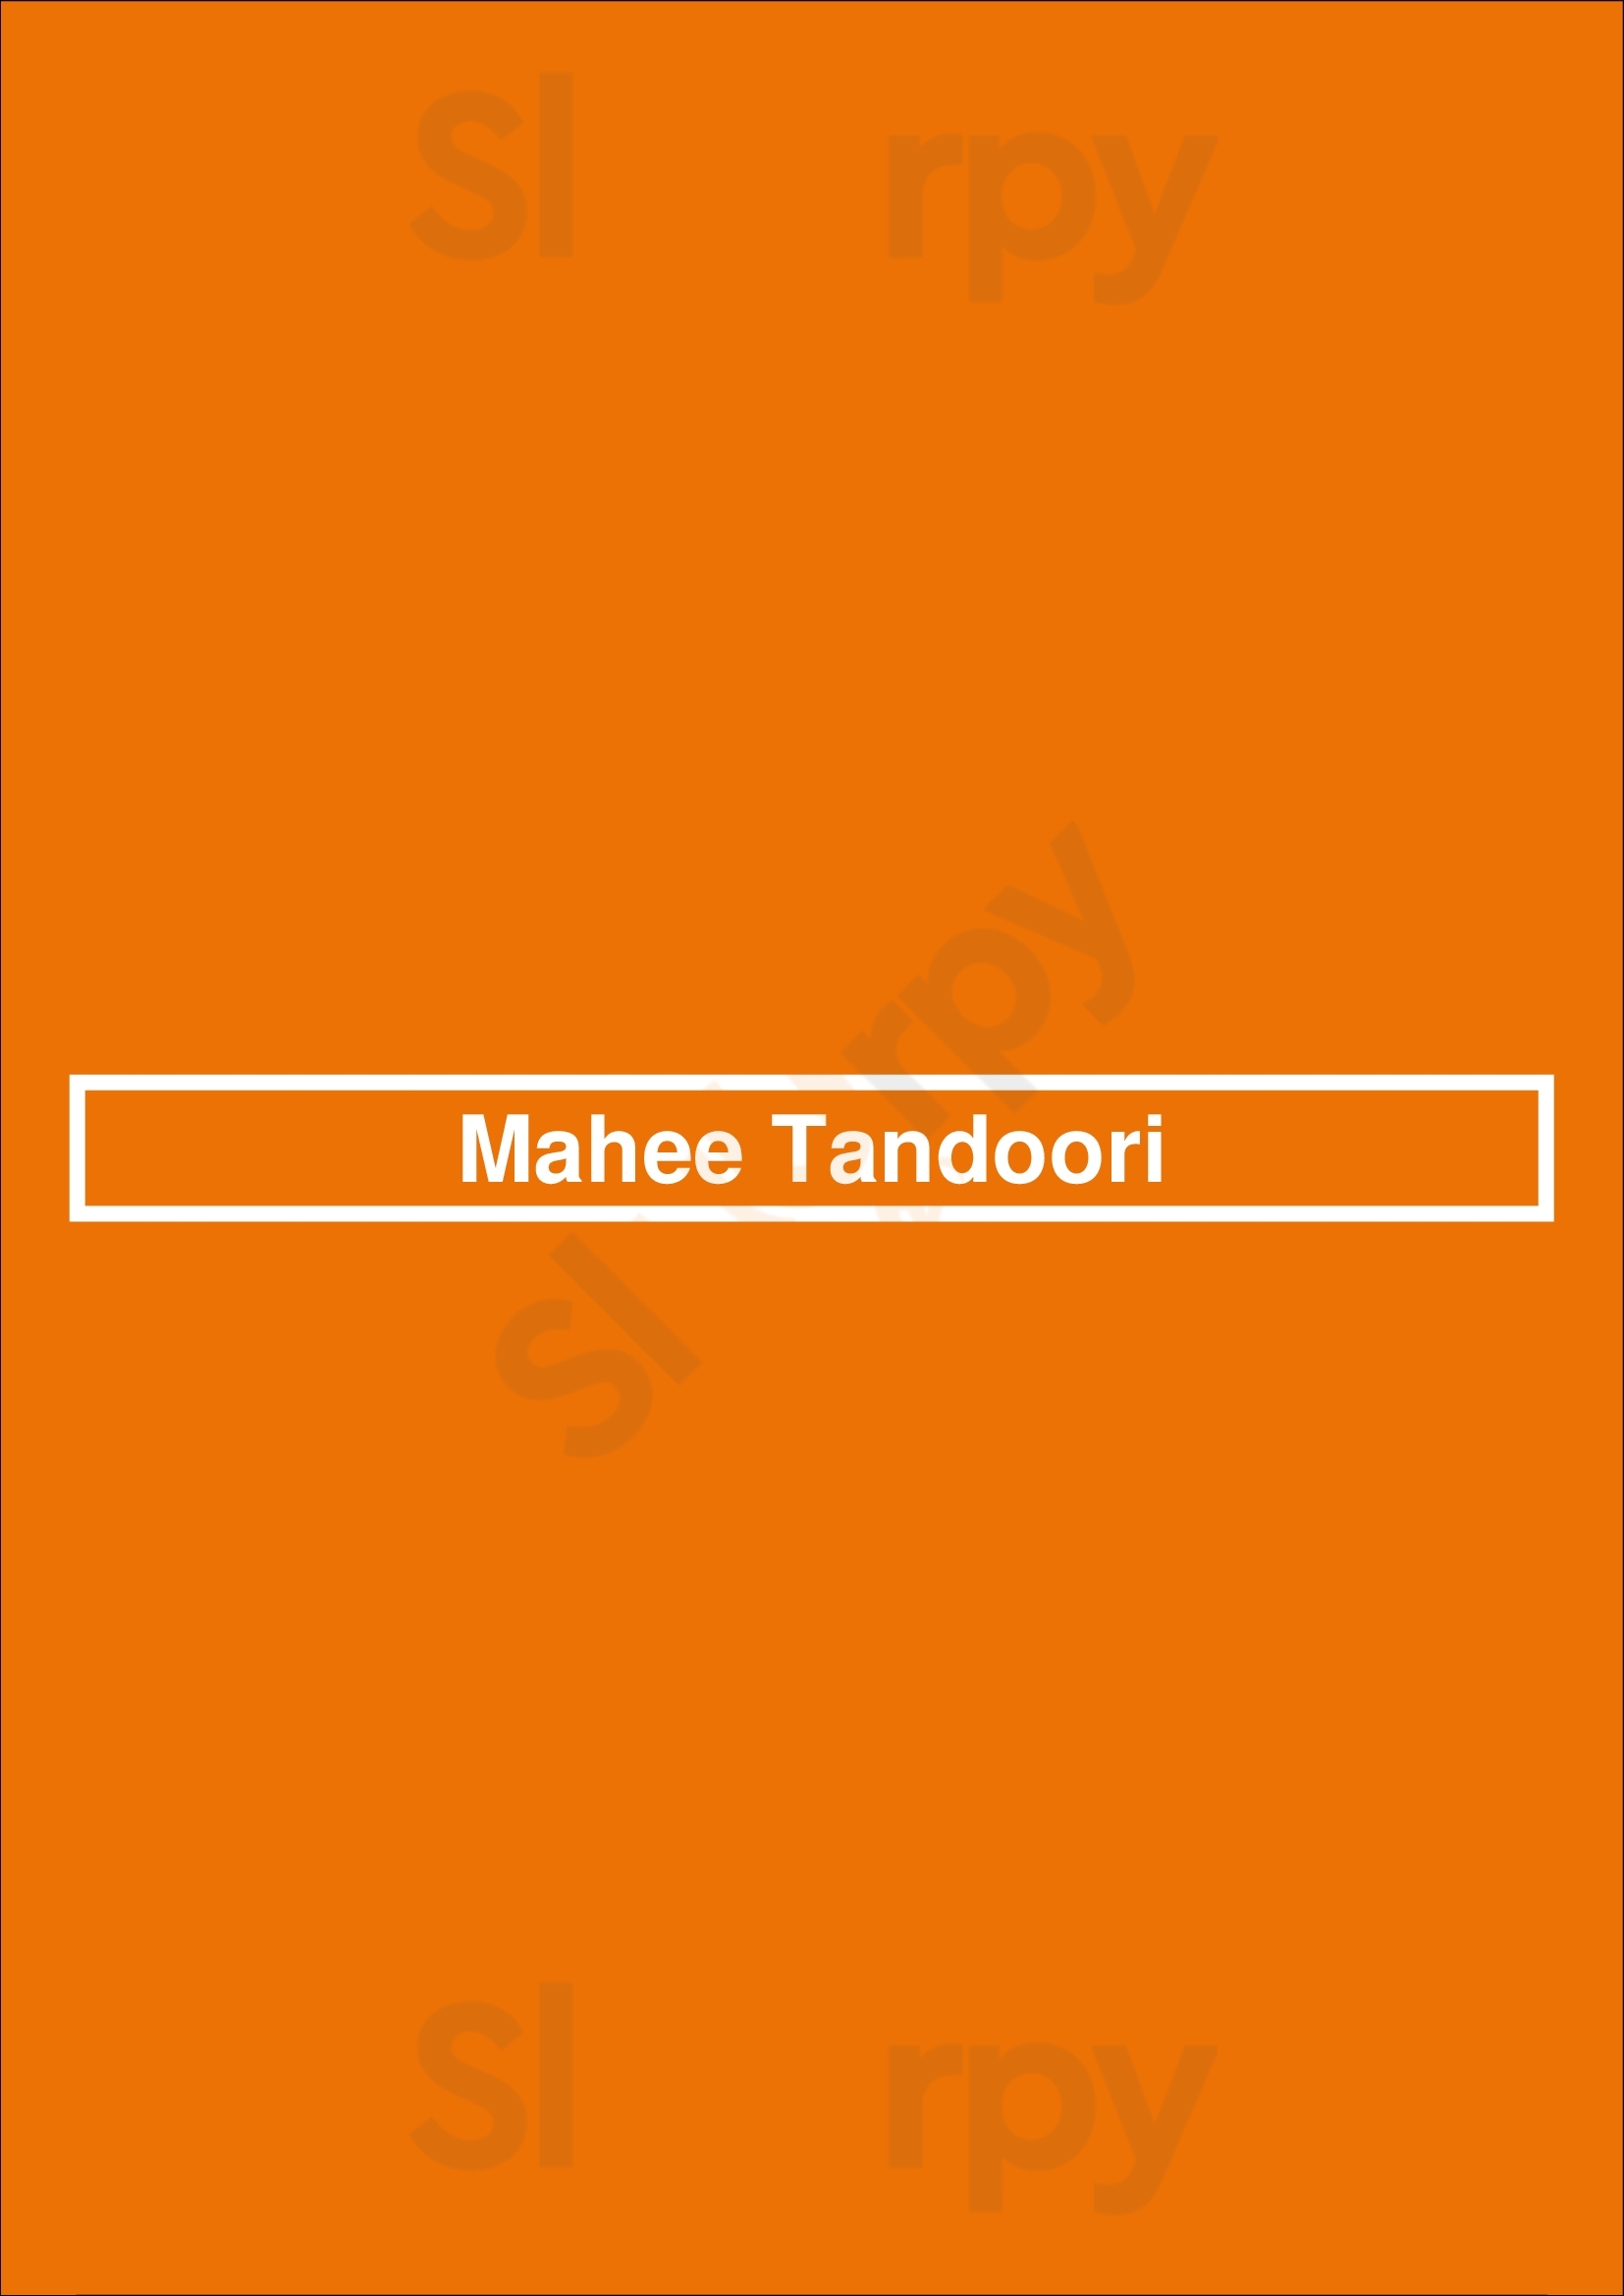 Mahee Tandoori Abingdon Menu - 1